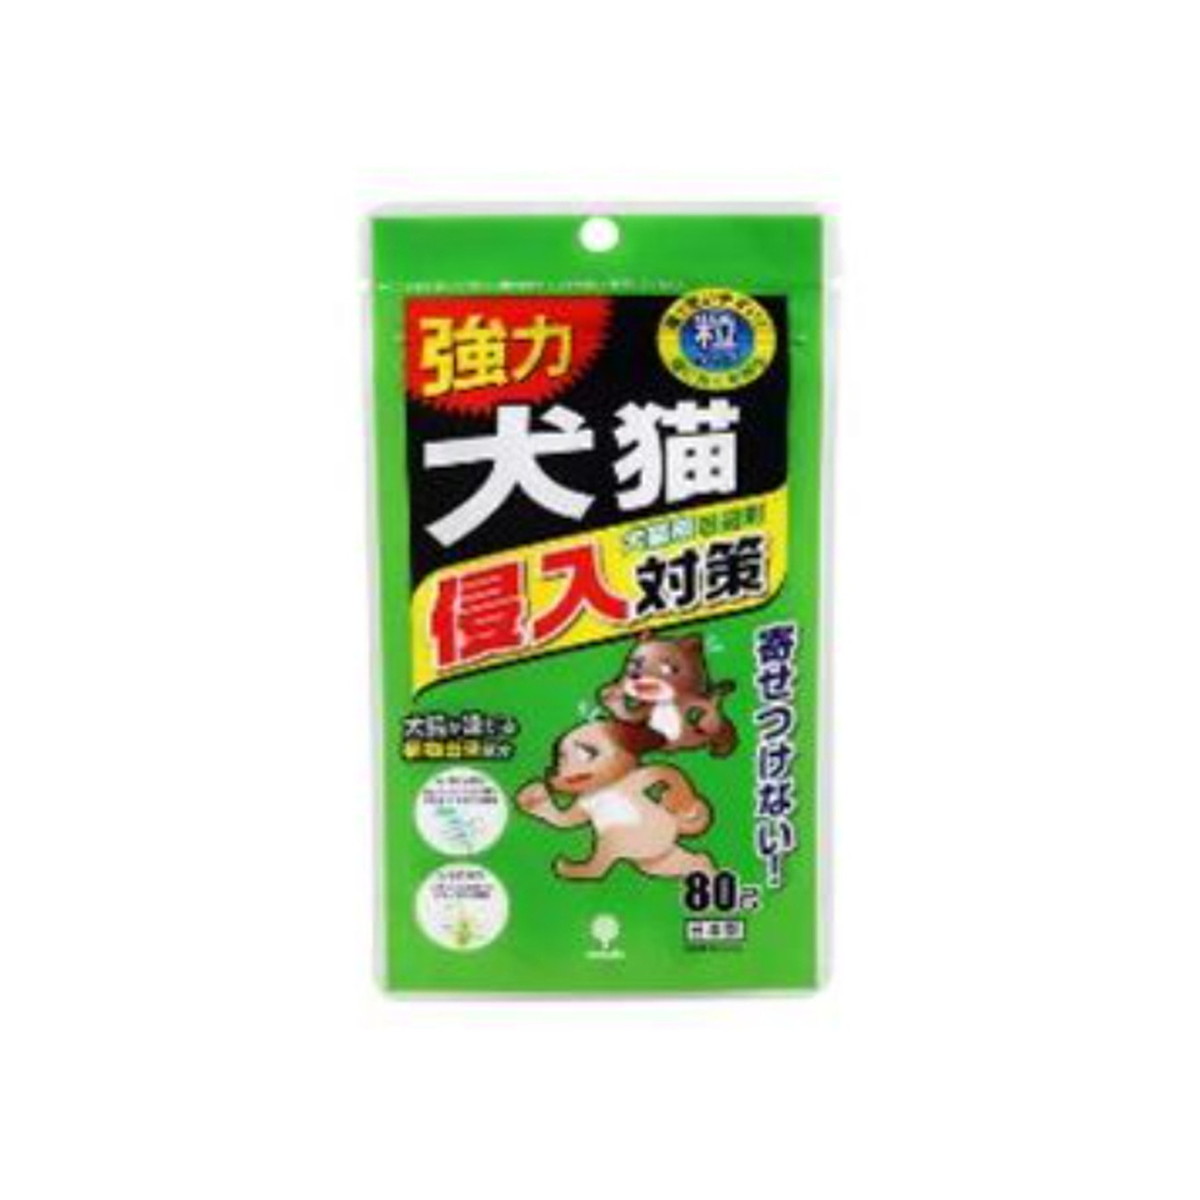 紀陽除虫菊 犬猫専用 侵入対策 犬猫用 忌避剤 80g